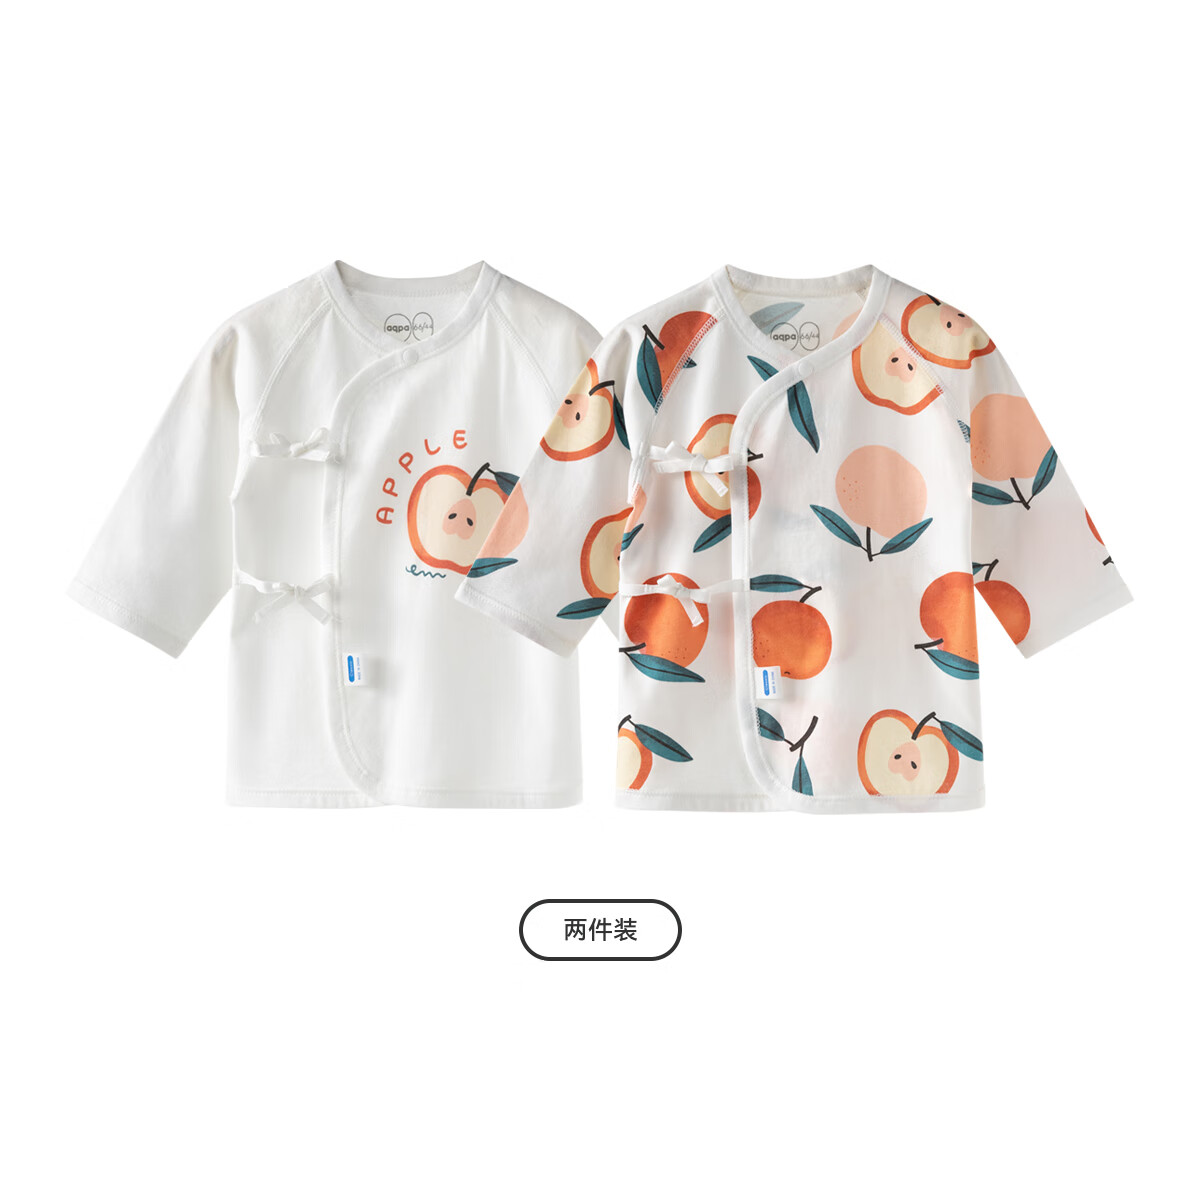 aqpa【2件装】爱帕新生婴儿夏季薄款上衣半背衣 苹苹安安组合 59cm 